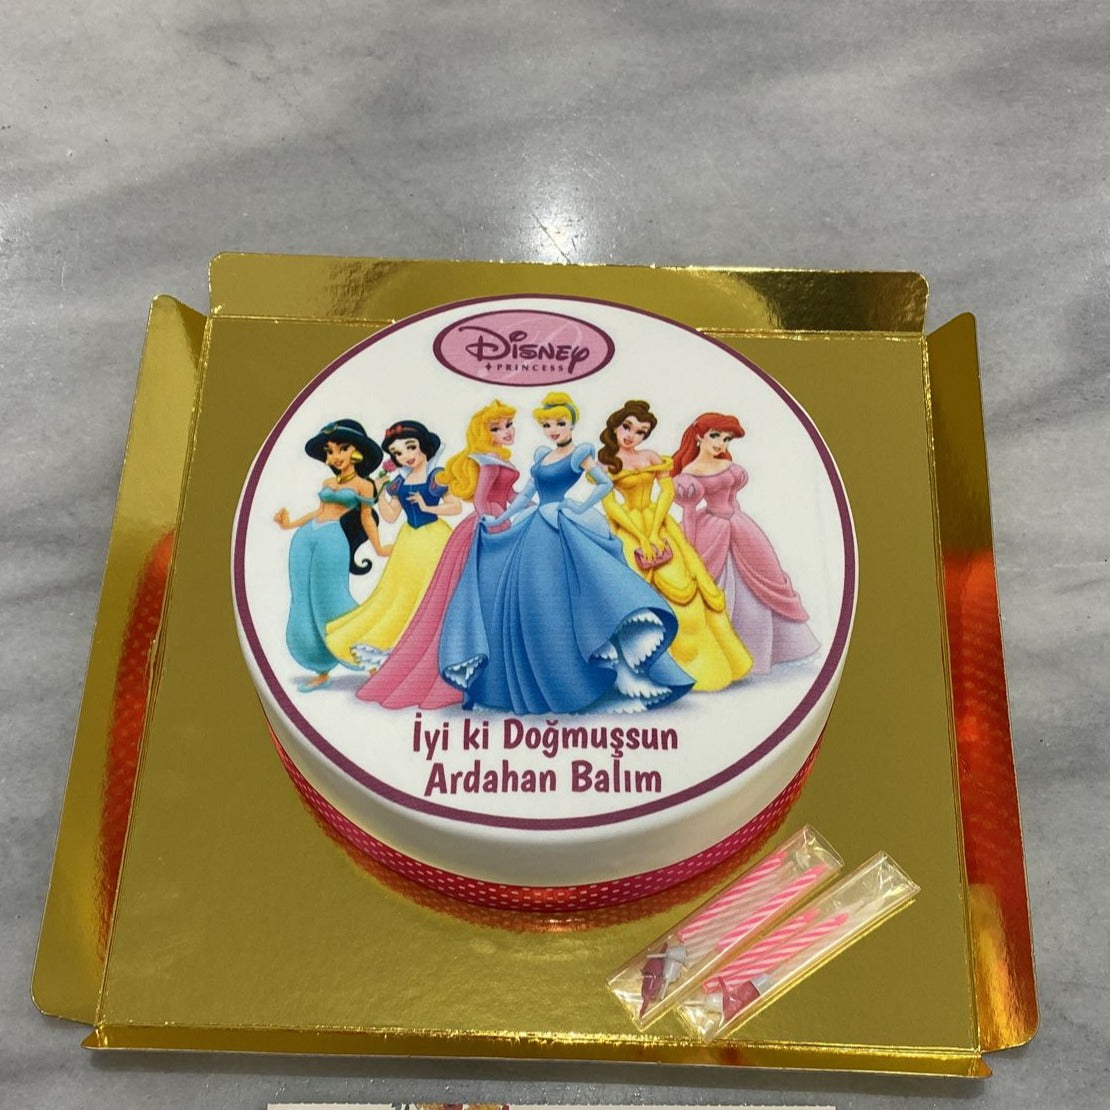 Disney Prensesleri Tasarım Pasta